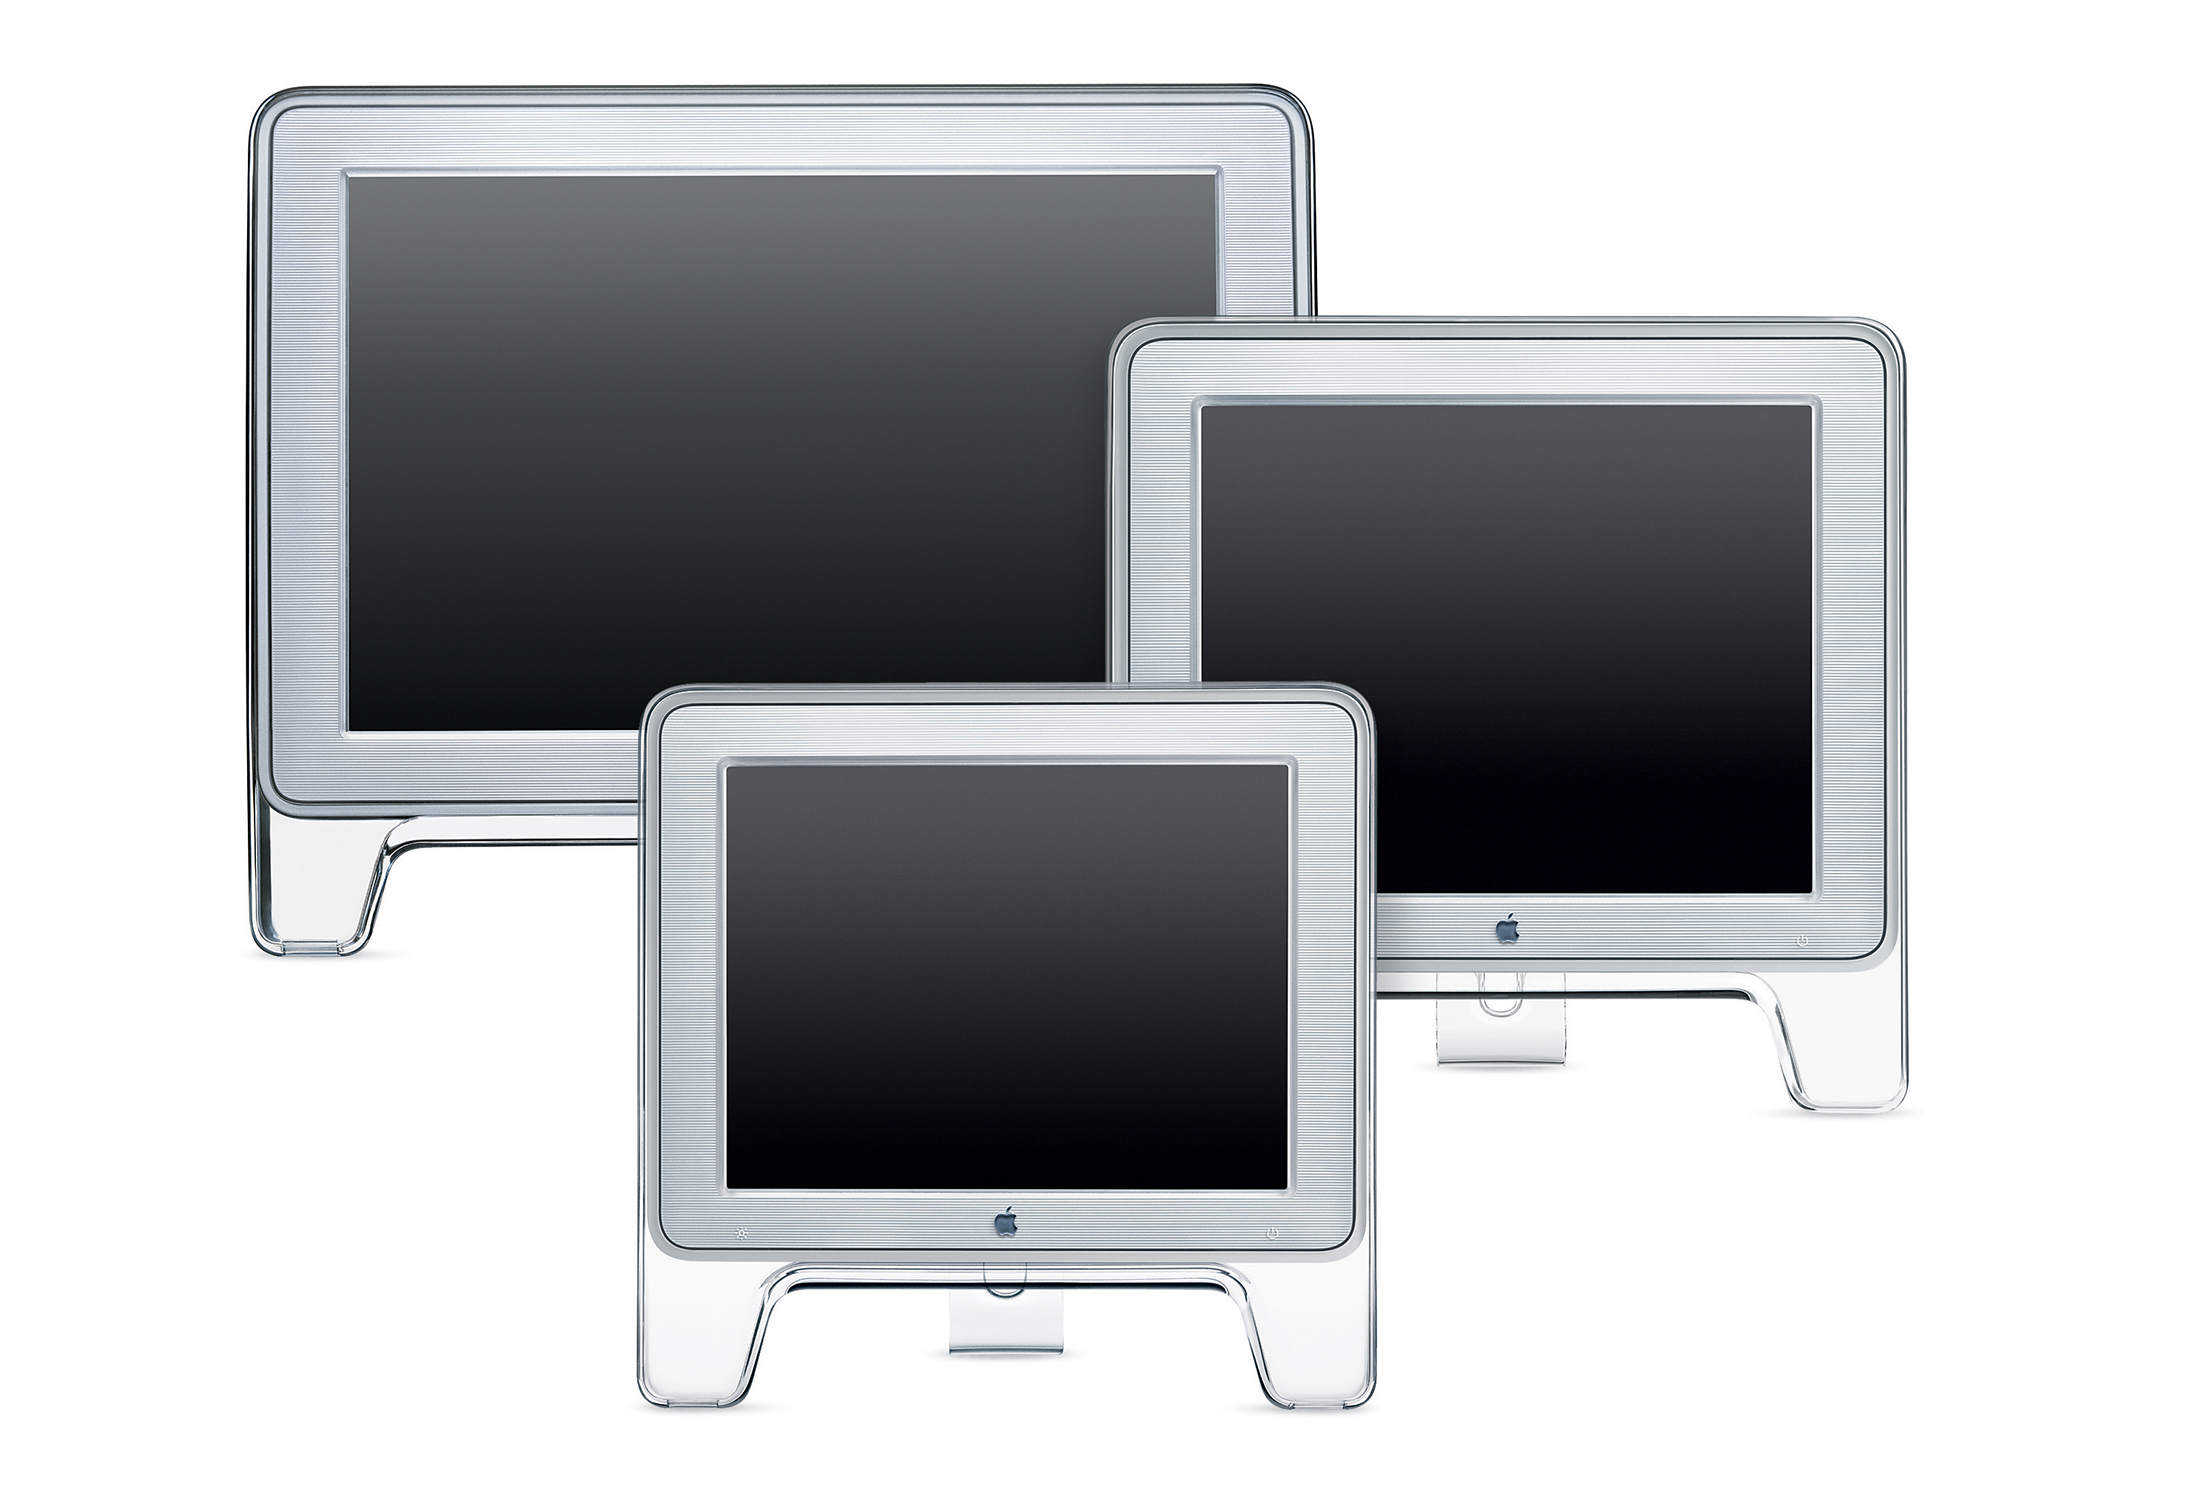 2001 Apple Display Lineup